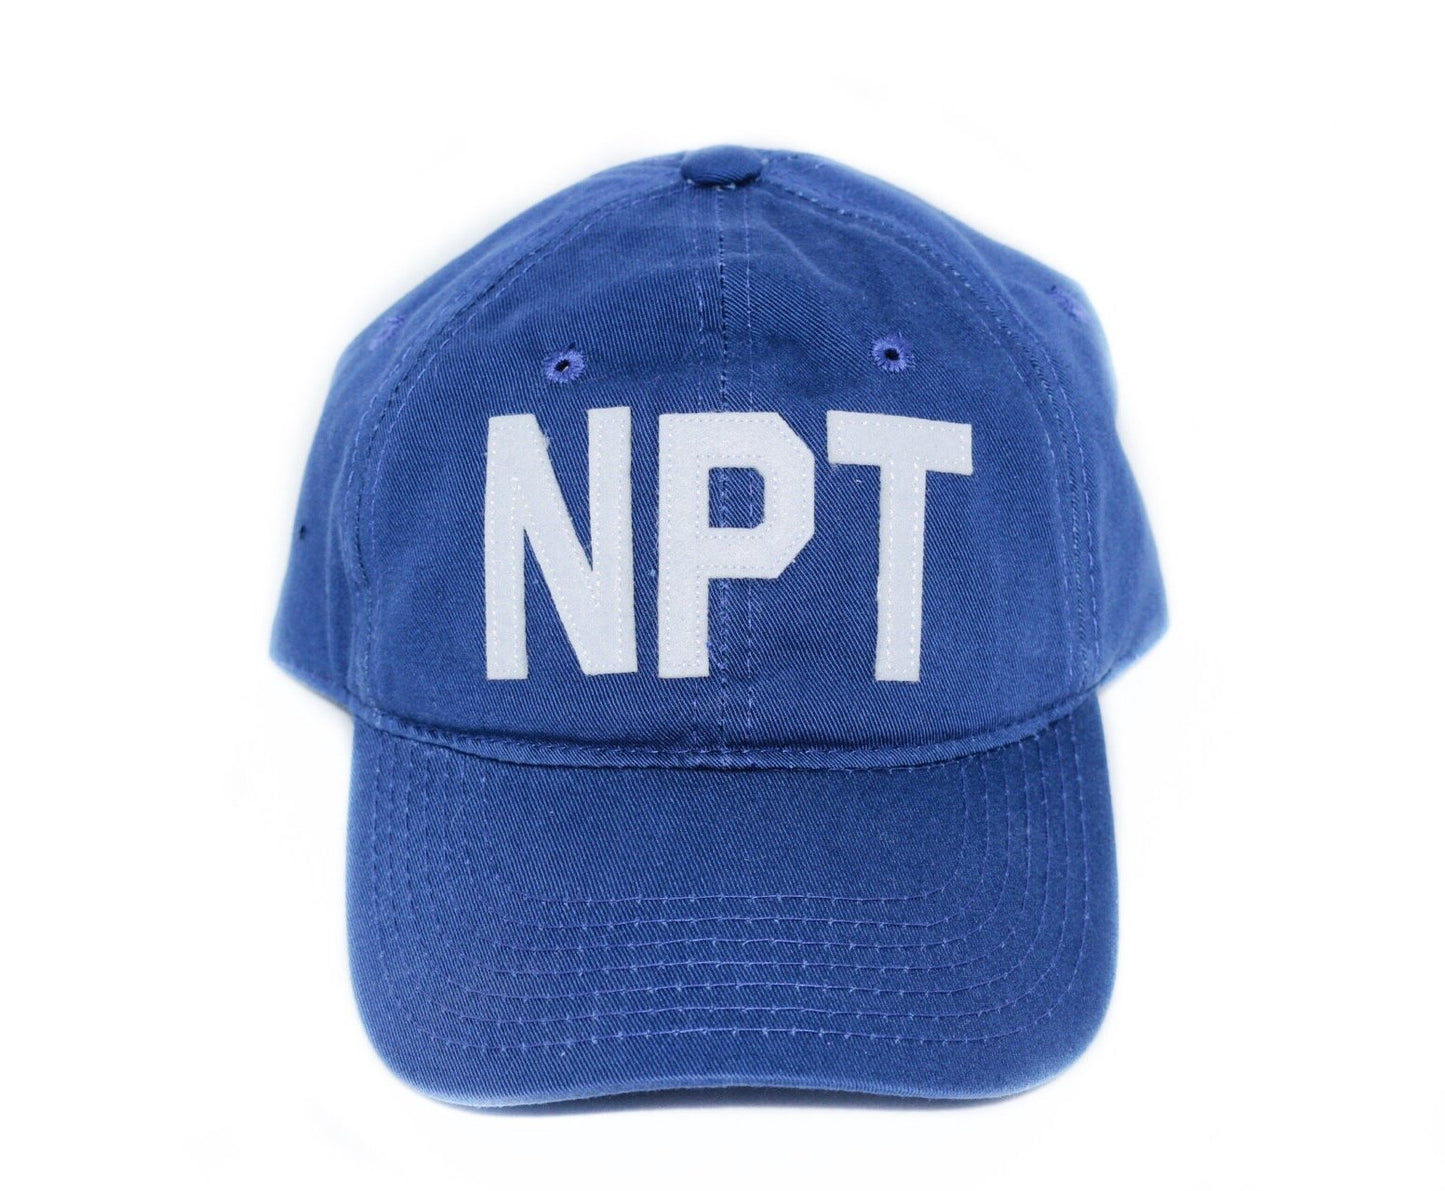 NPT - Newport, RI Hat